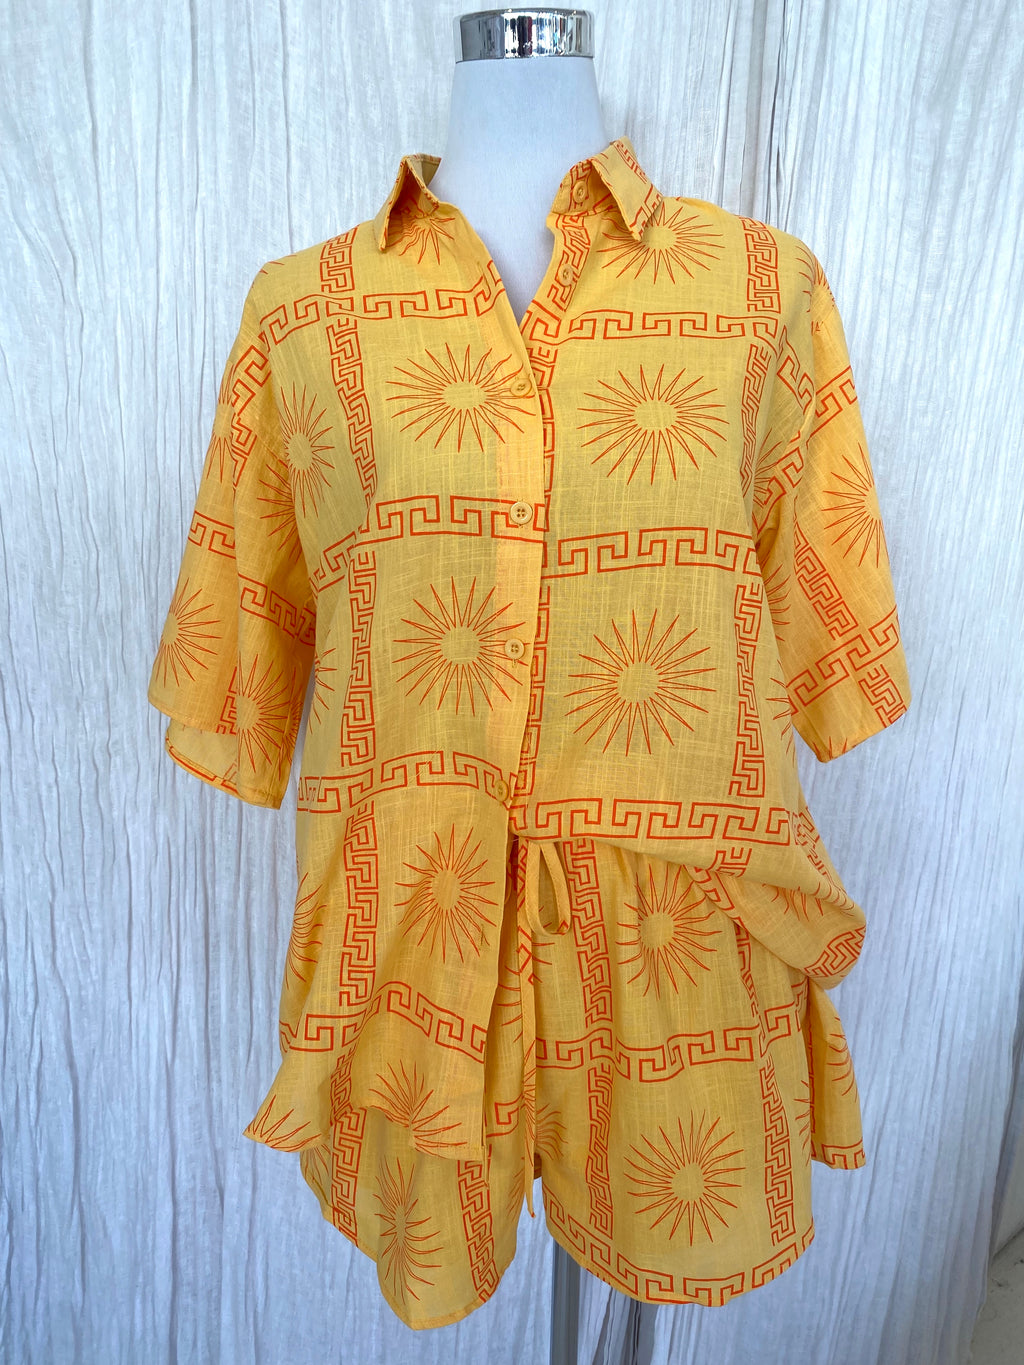 Greek Summer Sun shirt &short set